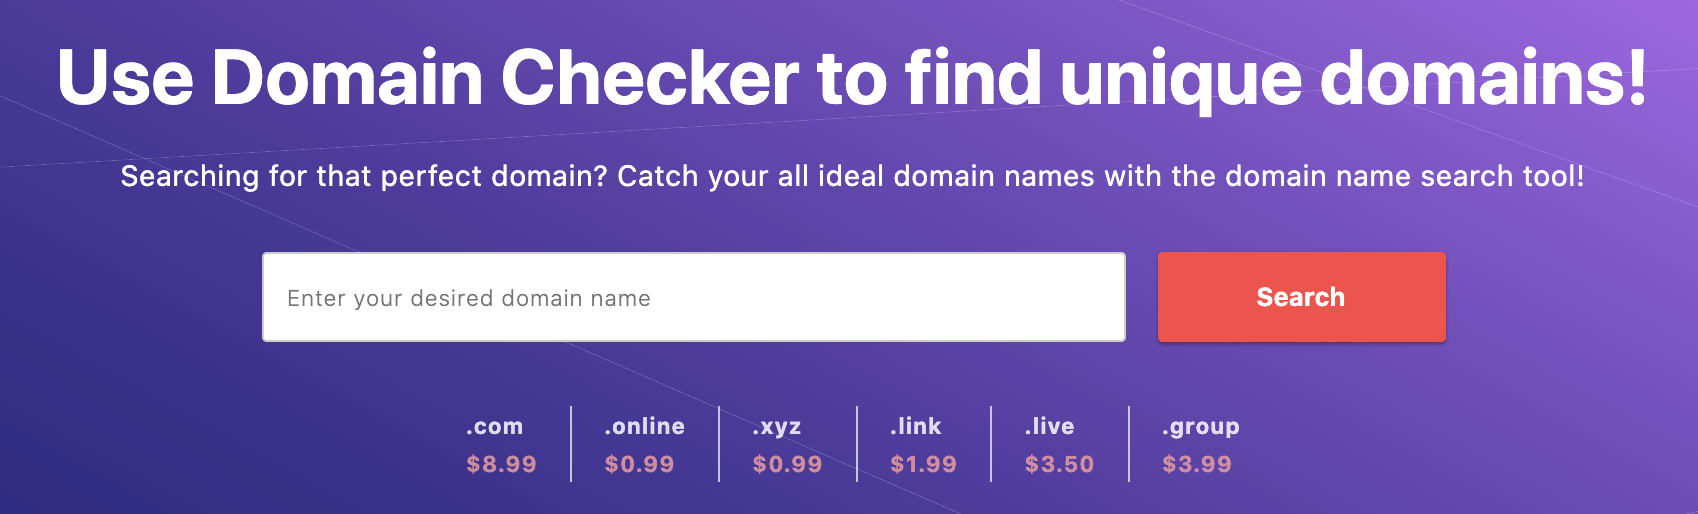 Domain checker tool on Hostinger